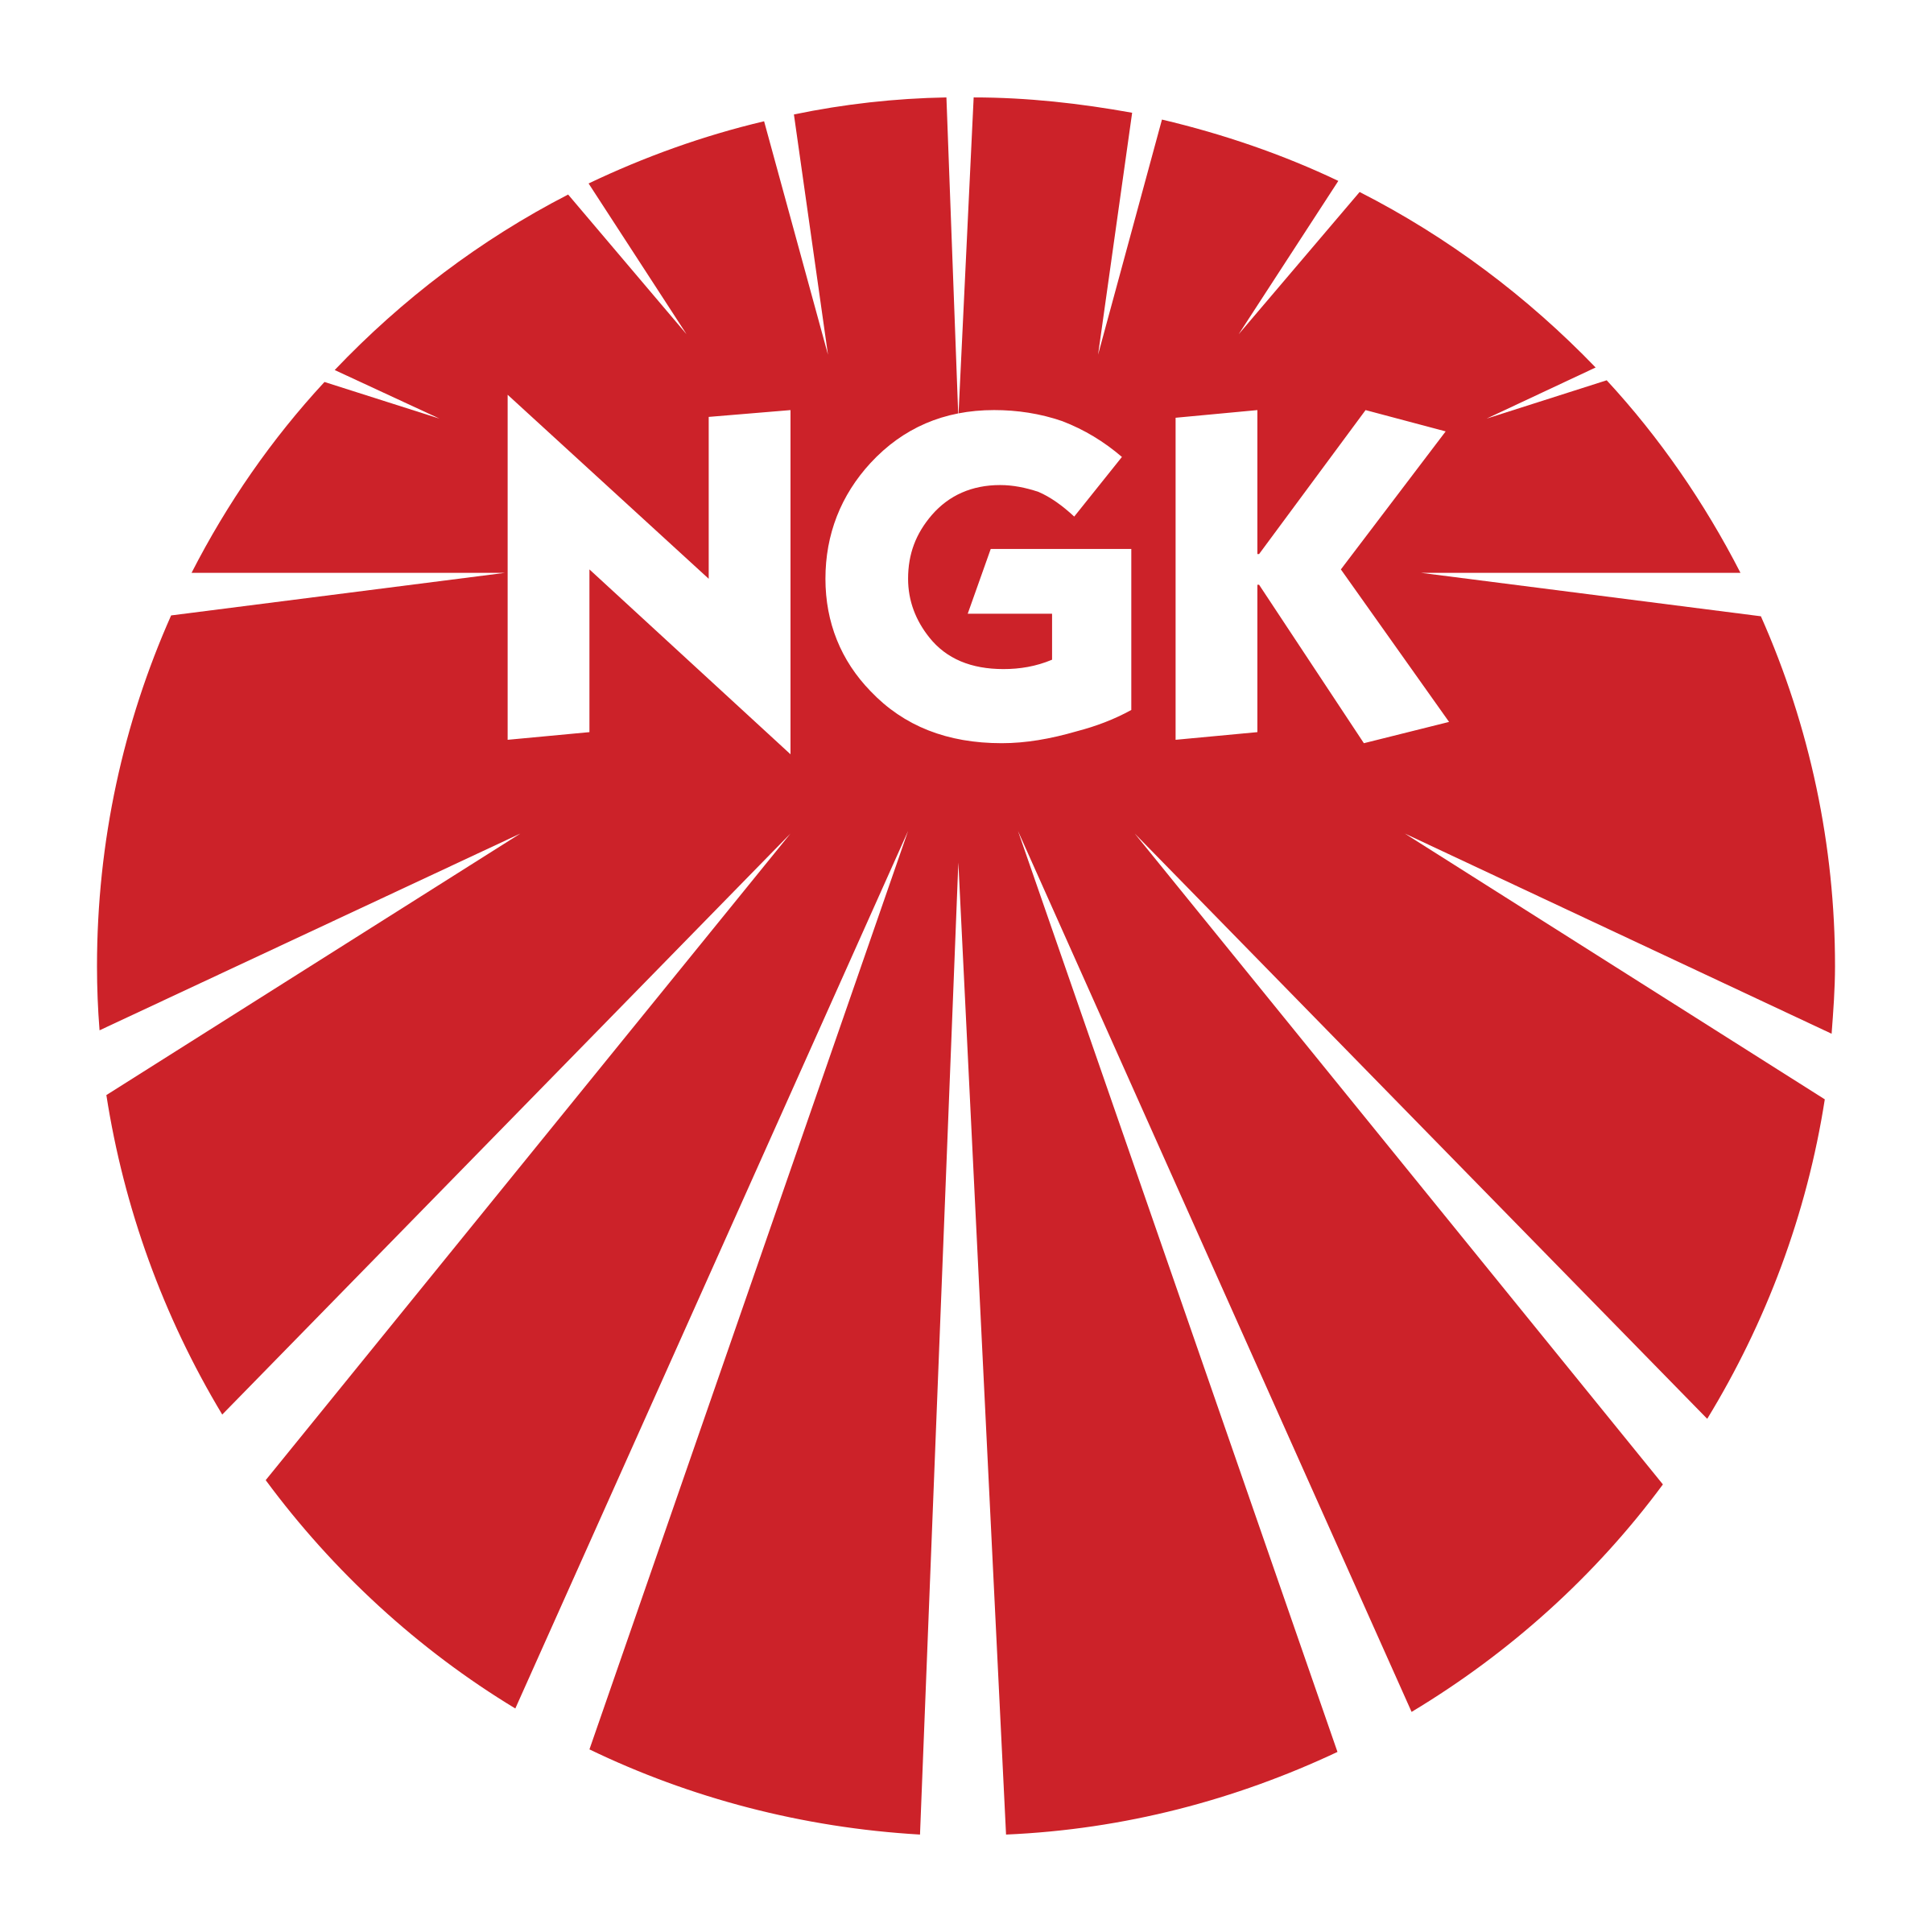 Nkg Logo - NGK Logo PNG Transparent & SVG Vector